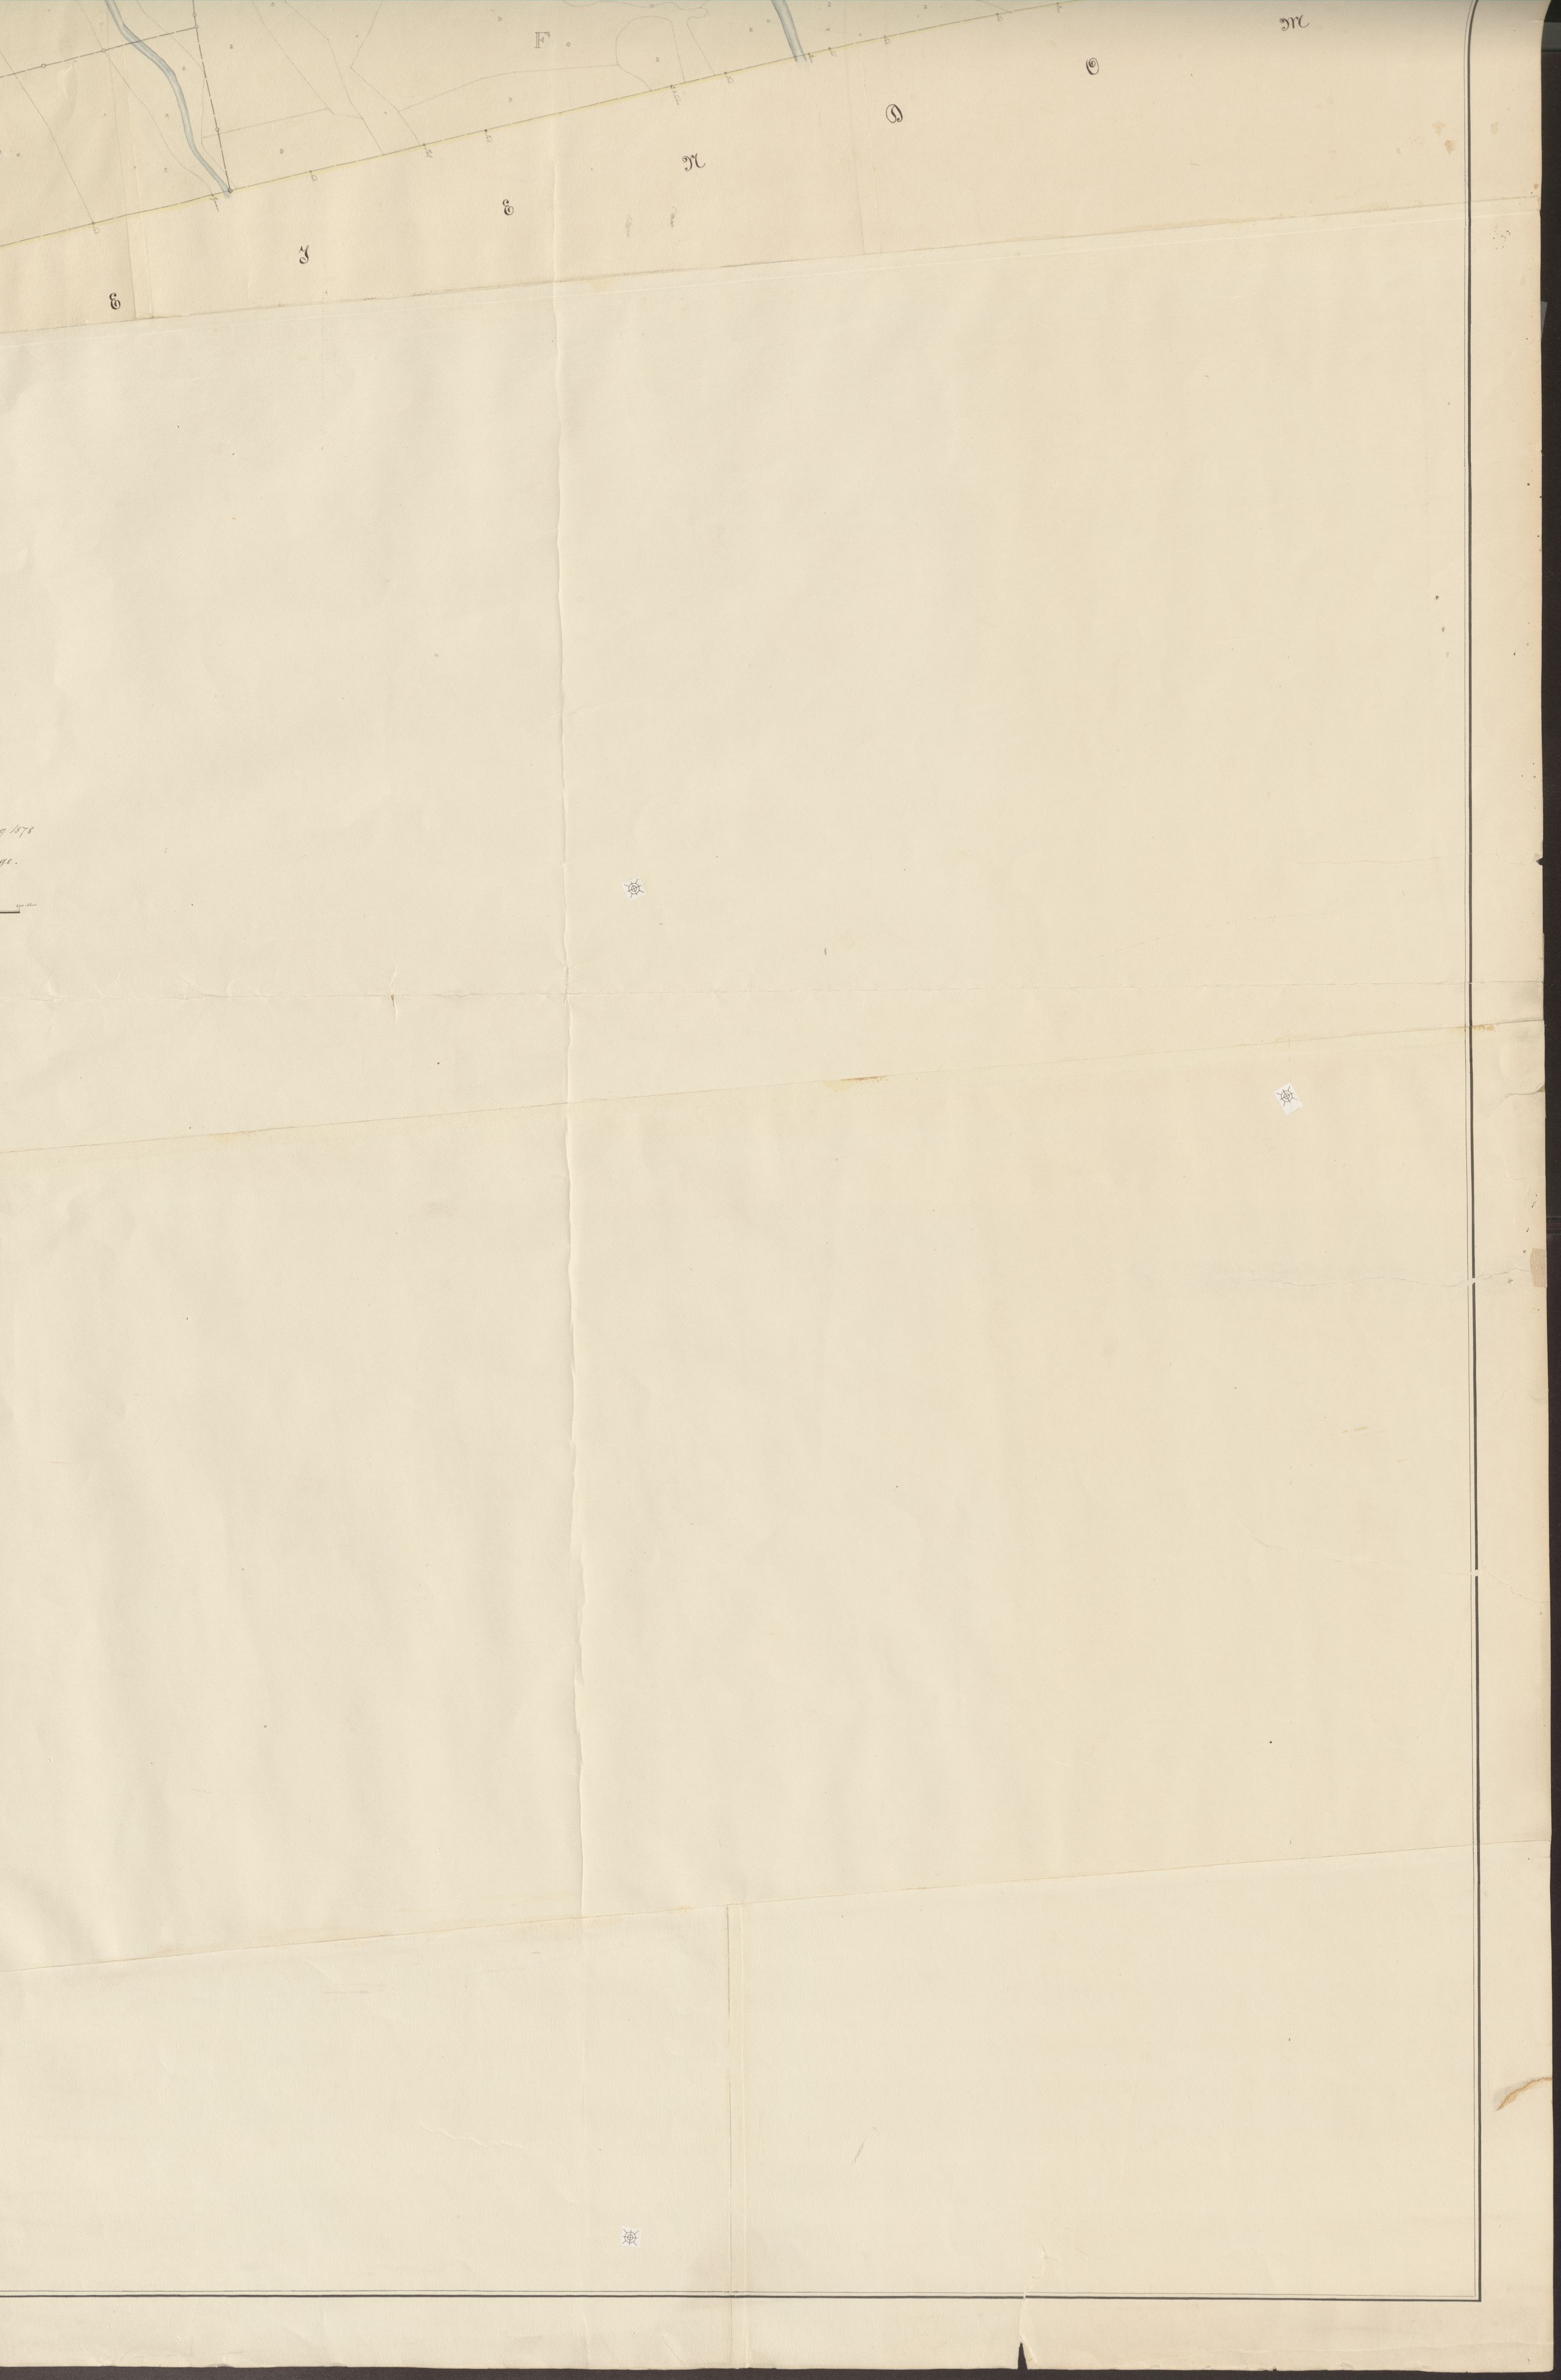 Jordskifteverkets kartarkiv, RA/S-3929/T, 1859-1988, s. 229